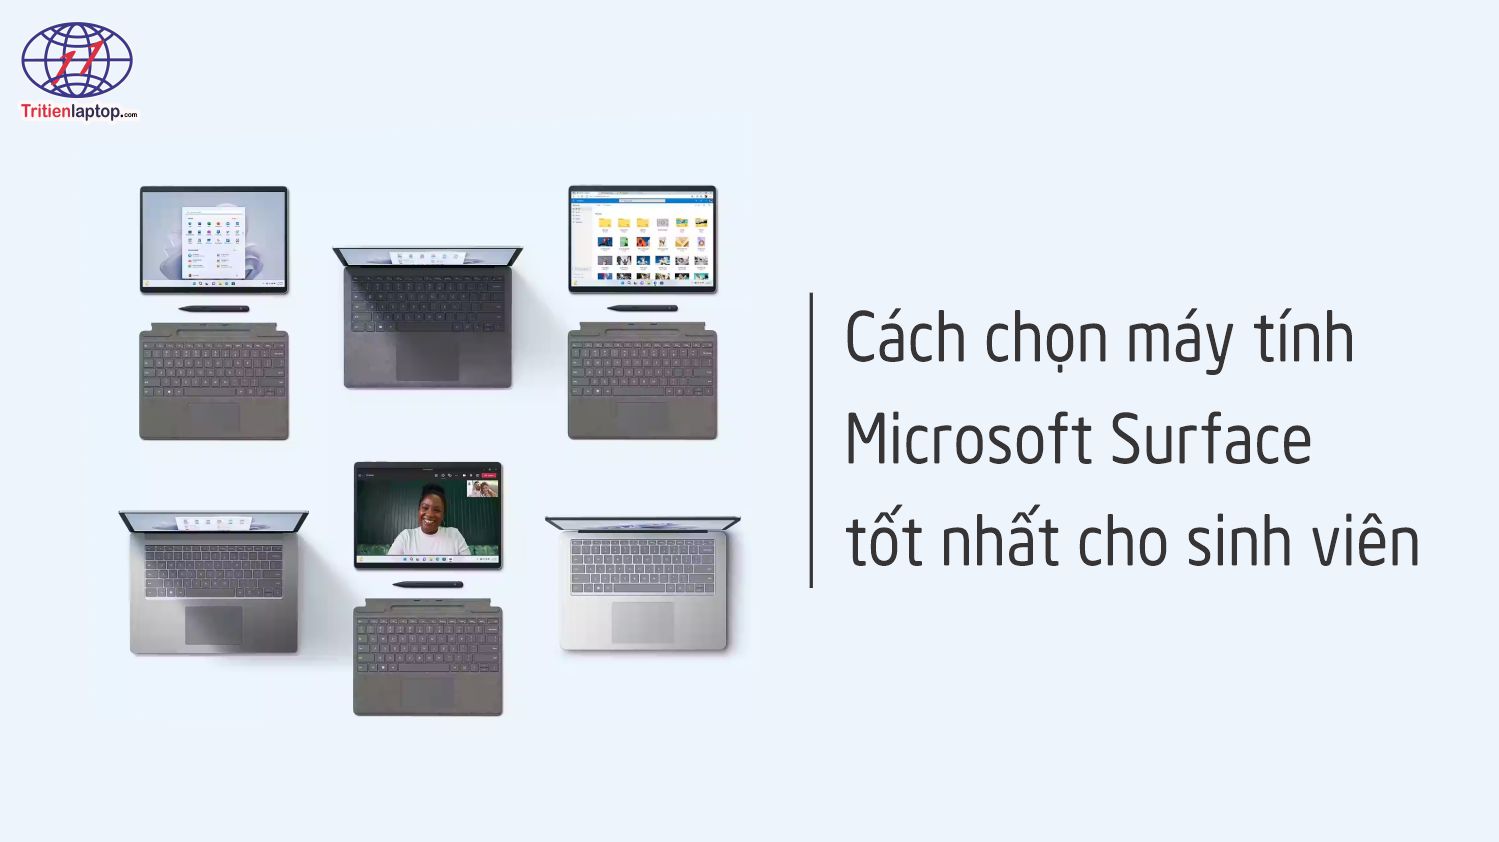 Cách chọn máy tính Microsoft Surface tốt nhất cho sinh viên